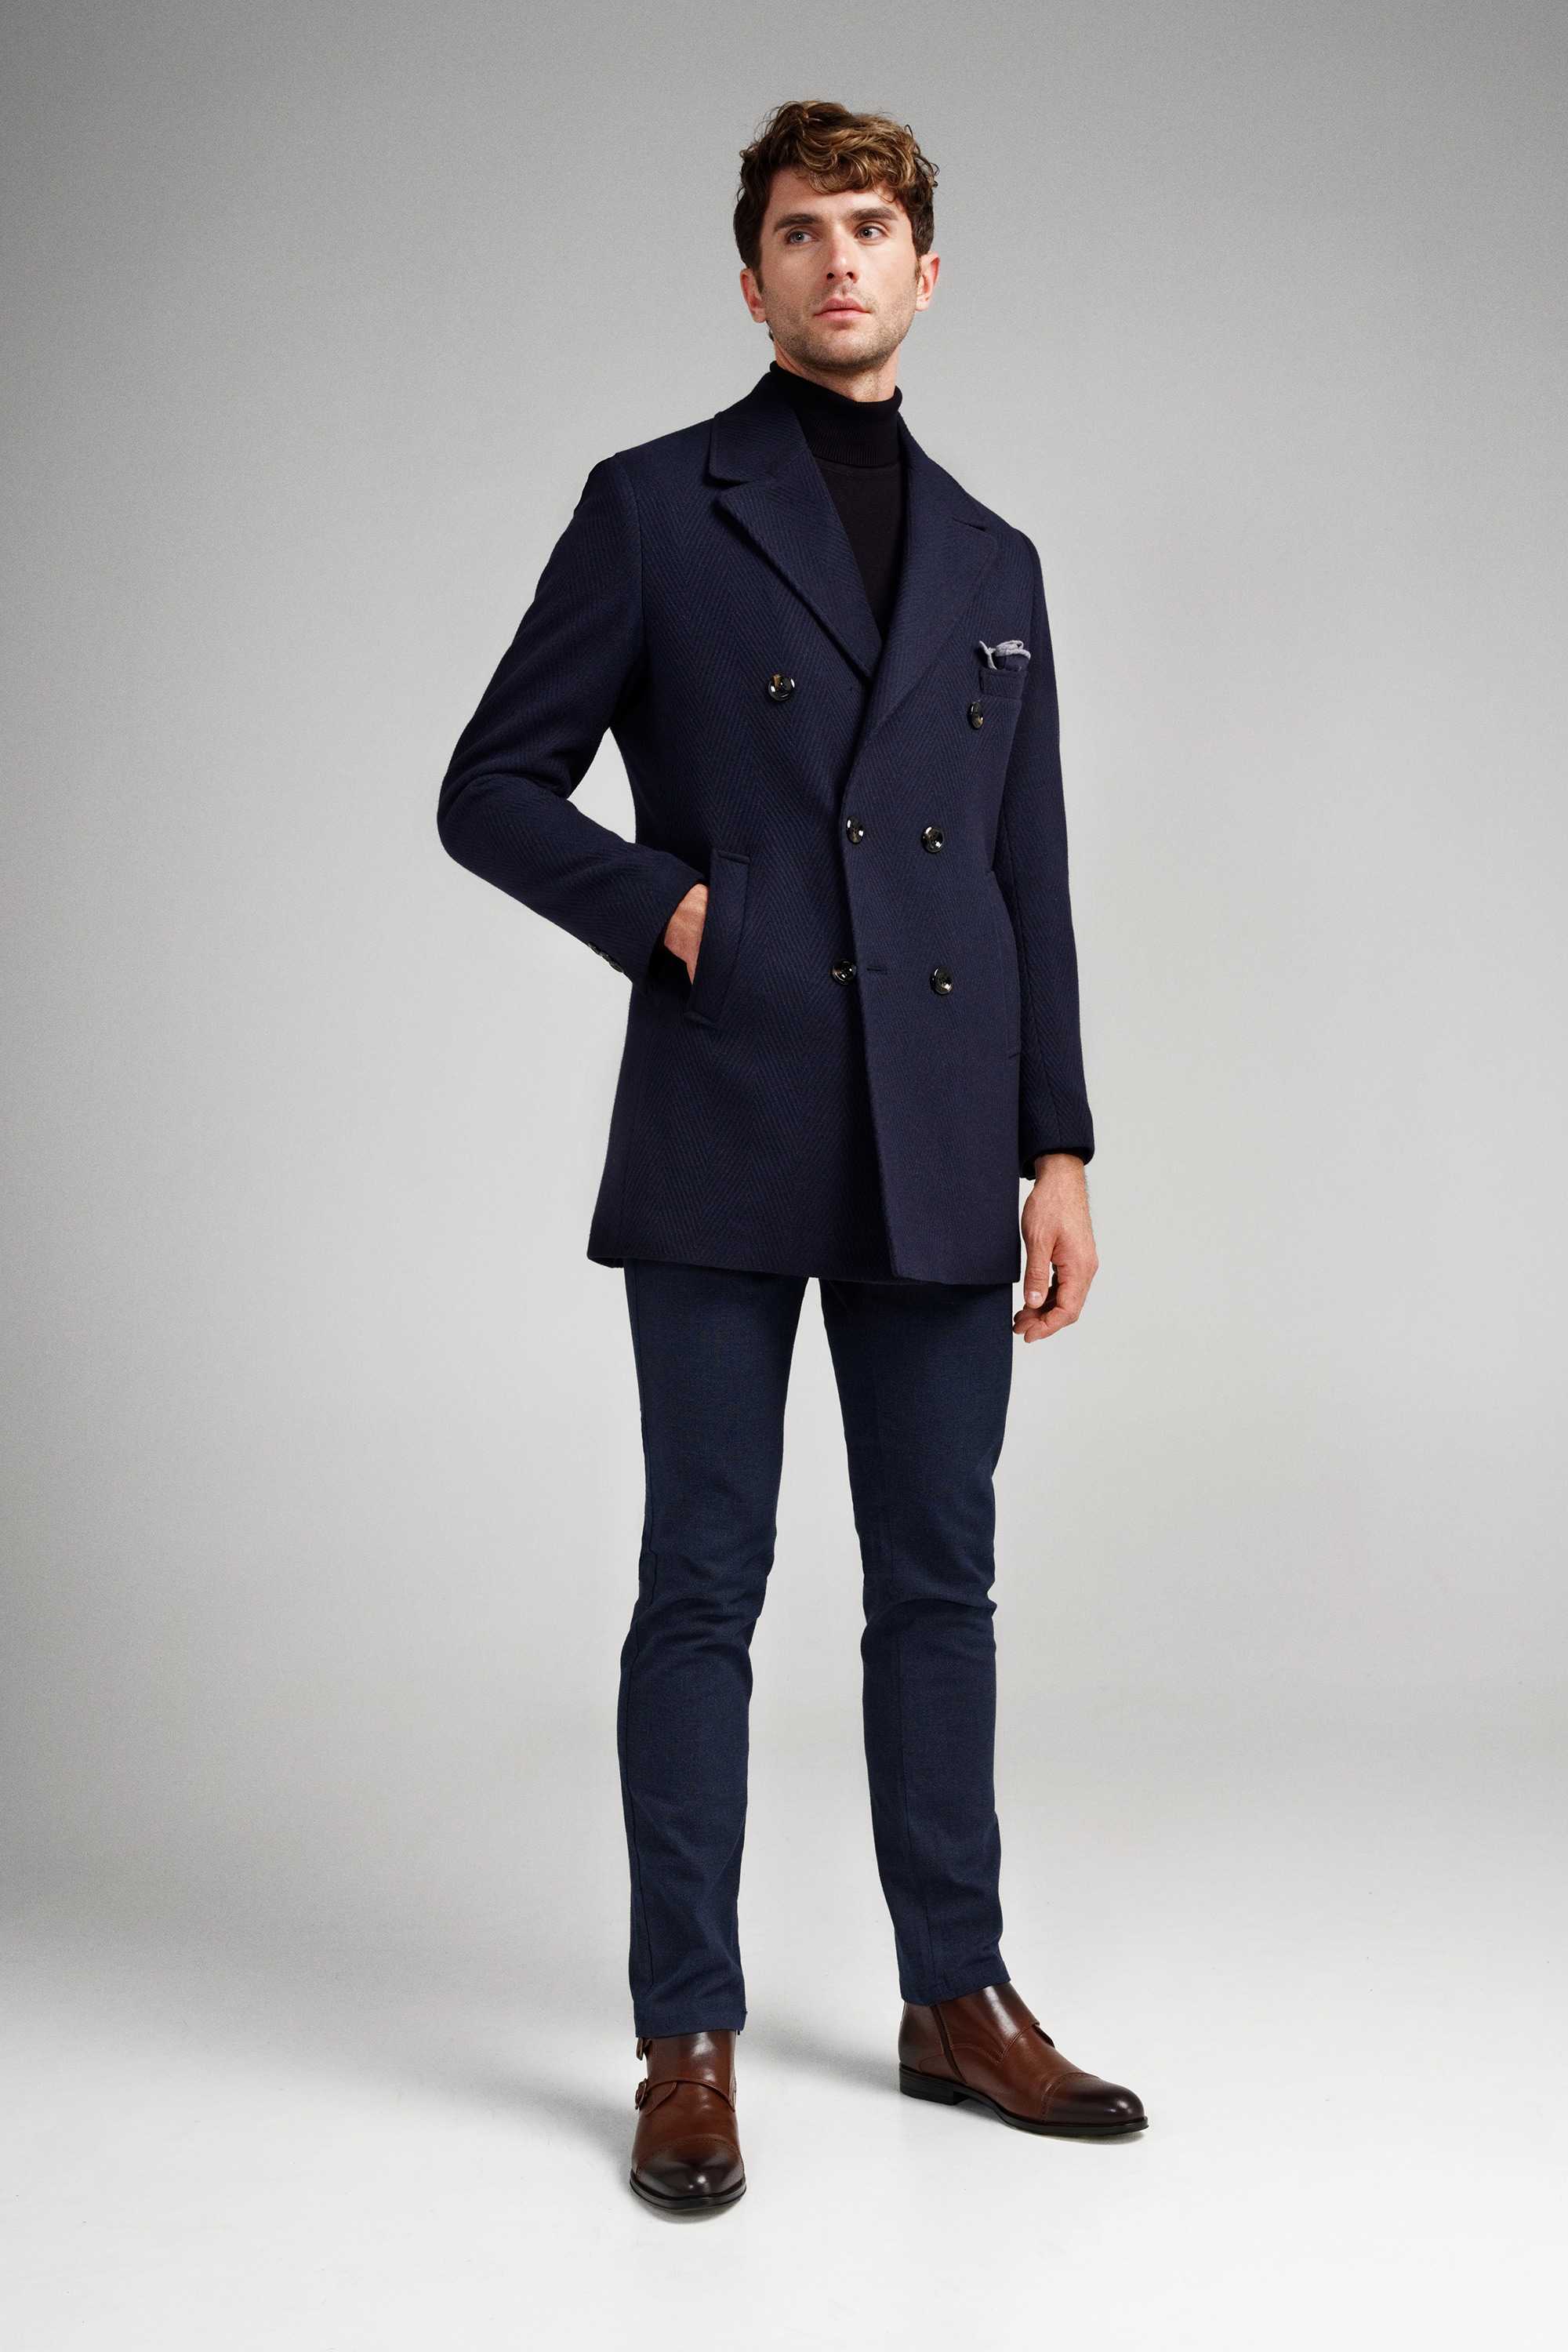 Пальто мужское синее, в крупную елочку, демисезонное, двубортное с английским лацканом